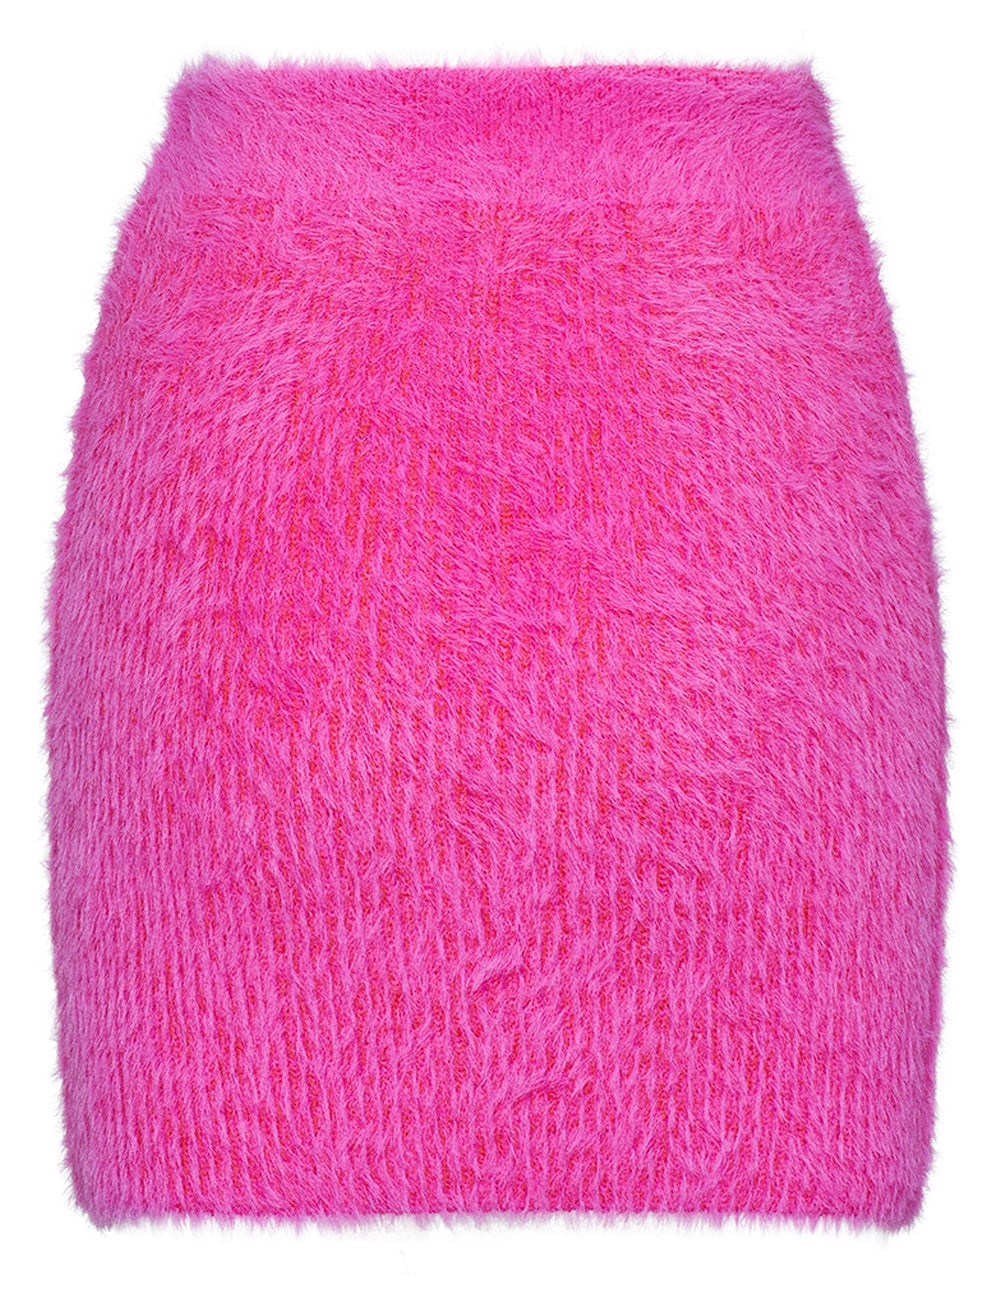 Wool Mix Fluffy Knit Skirt - 2